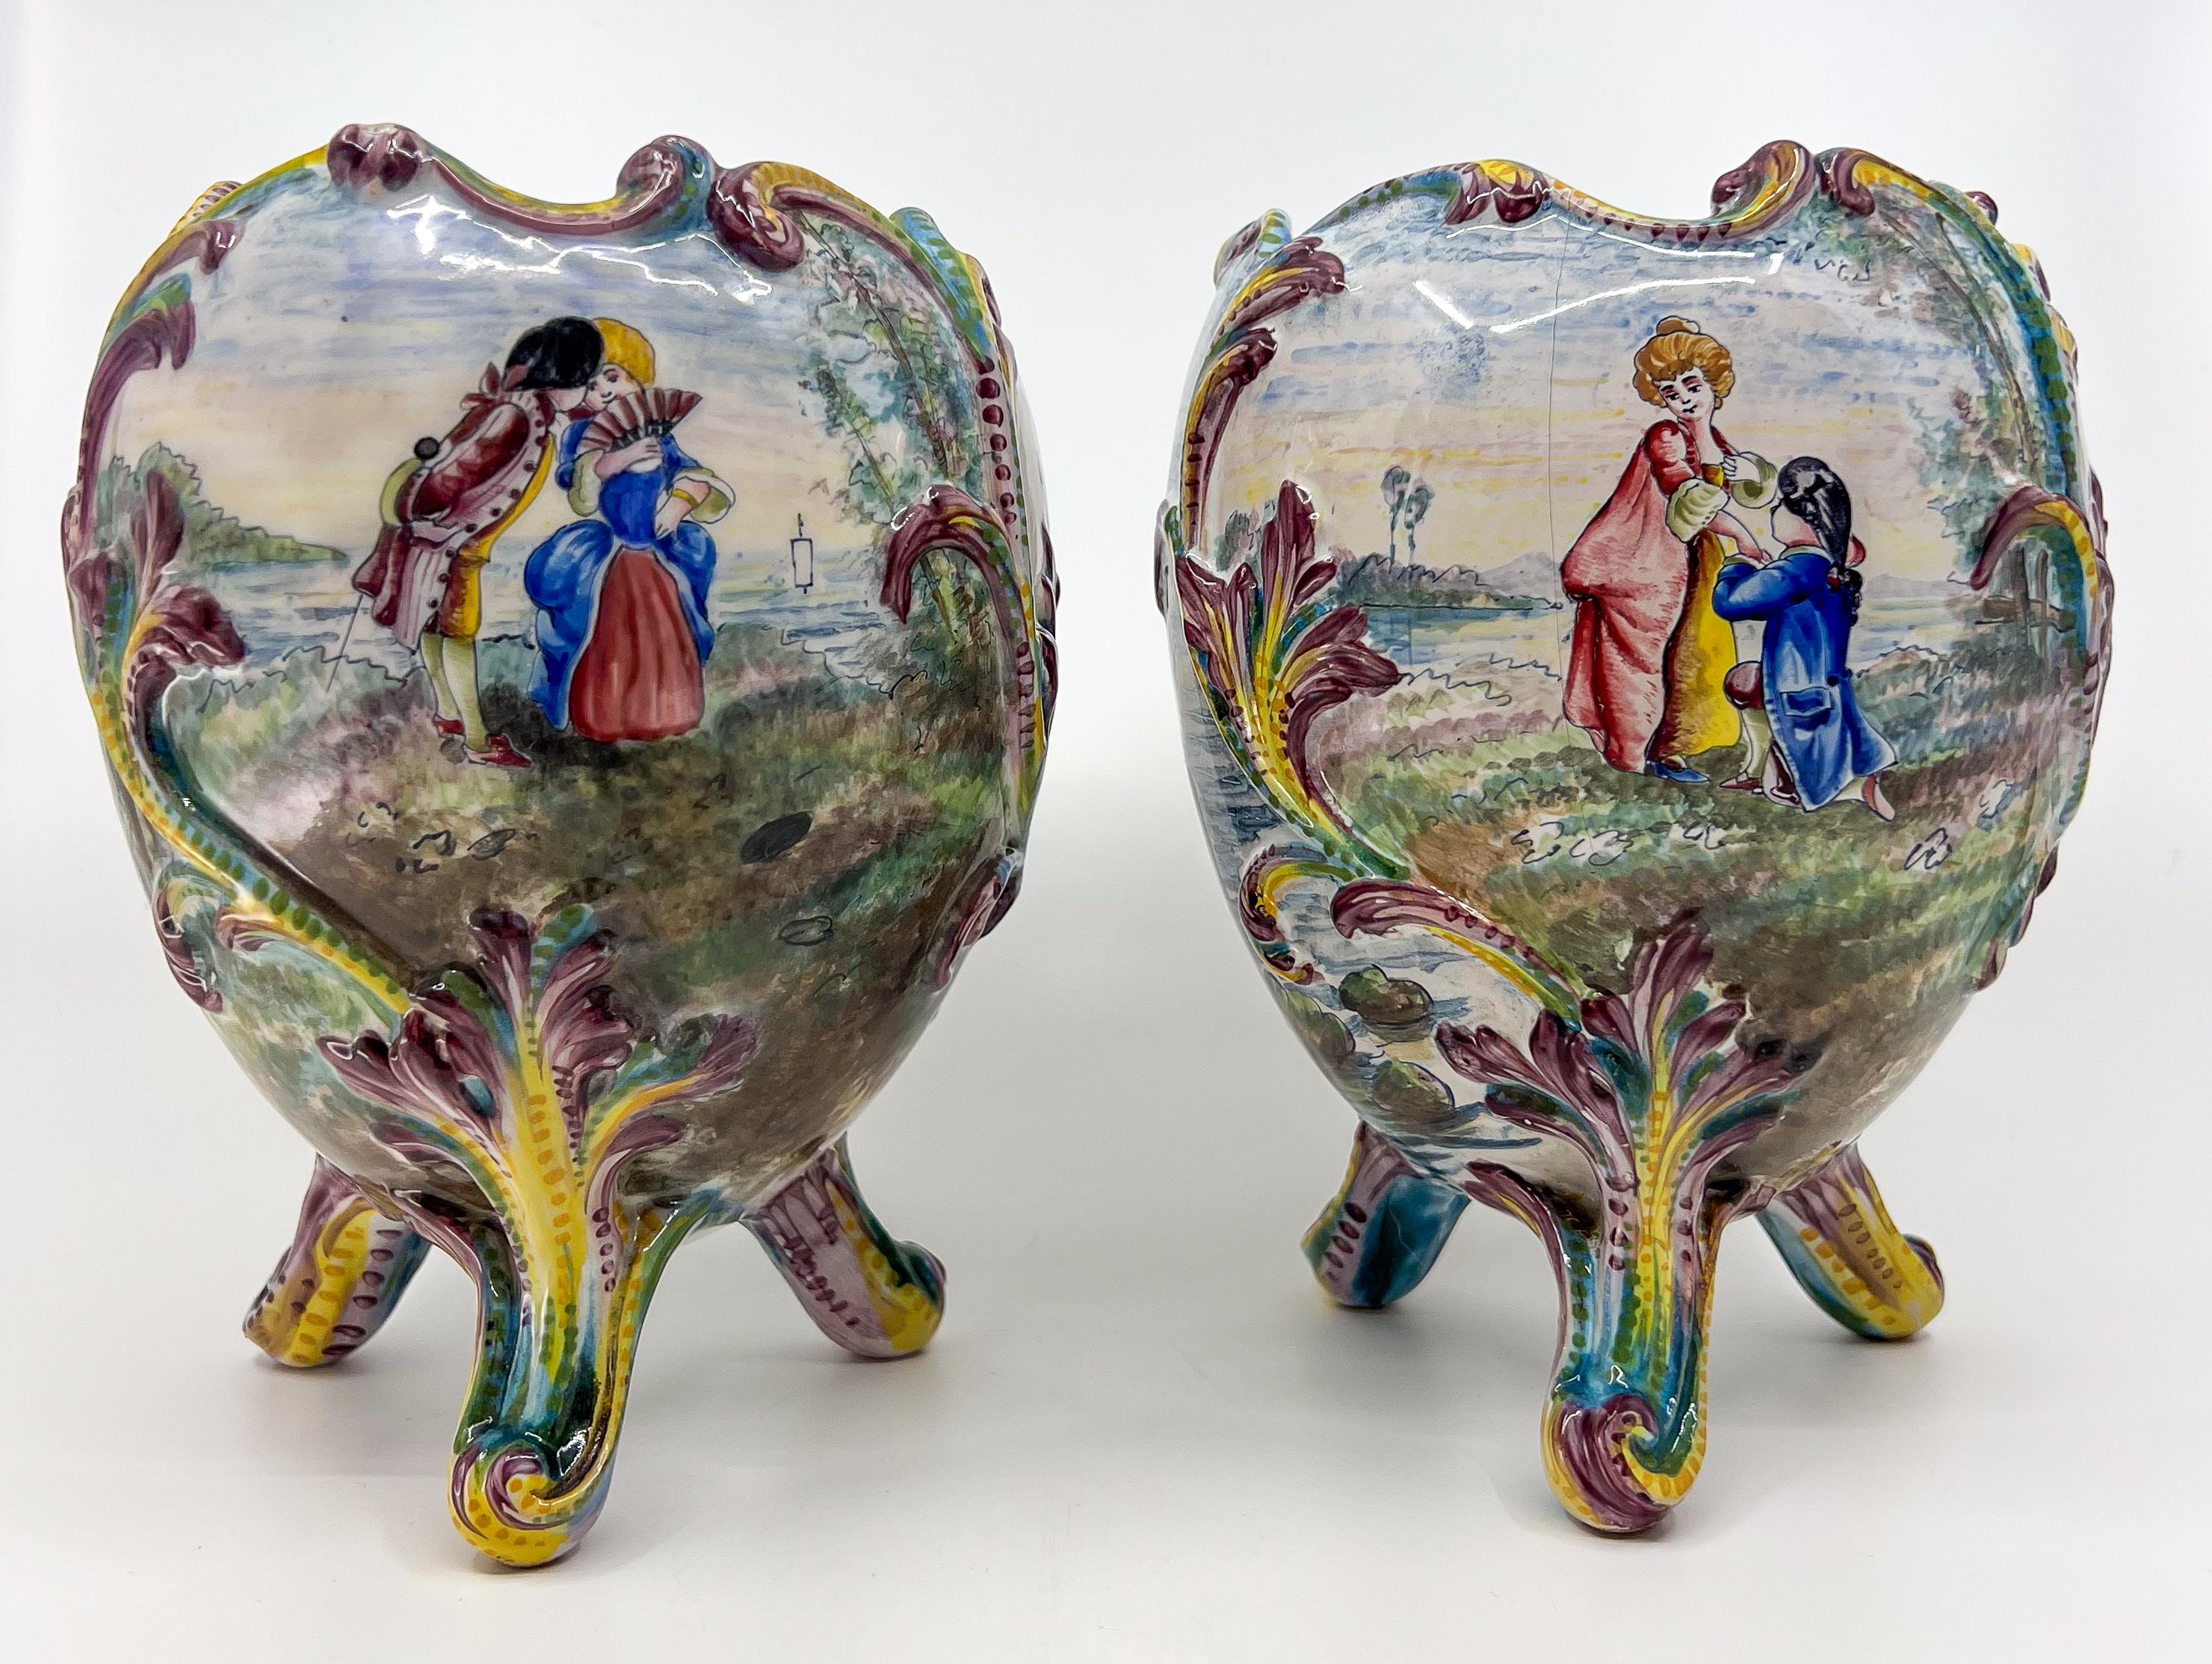 Paar handbemalte Porzellanvasen oder Jardinieres aus der Belle Epoque mit romantischen Szenen, Booten und Blumen.

